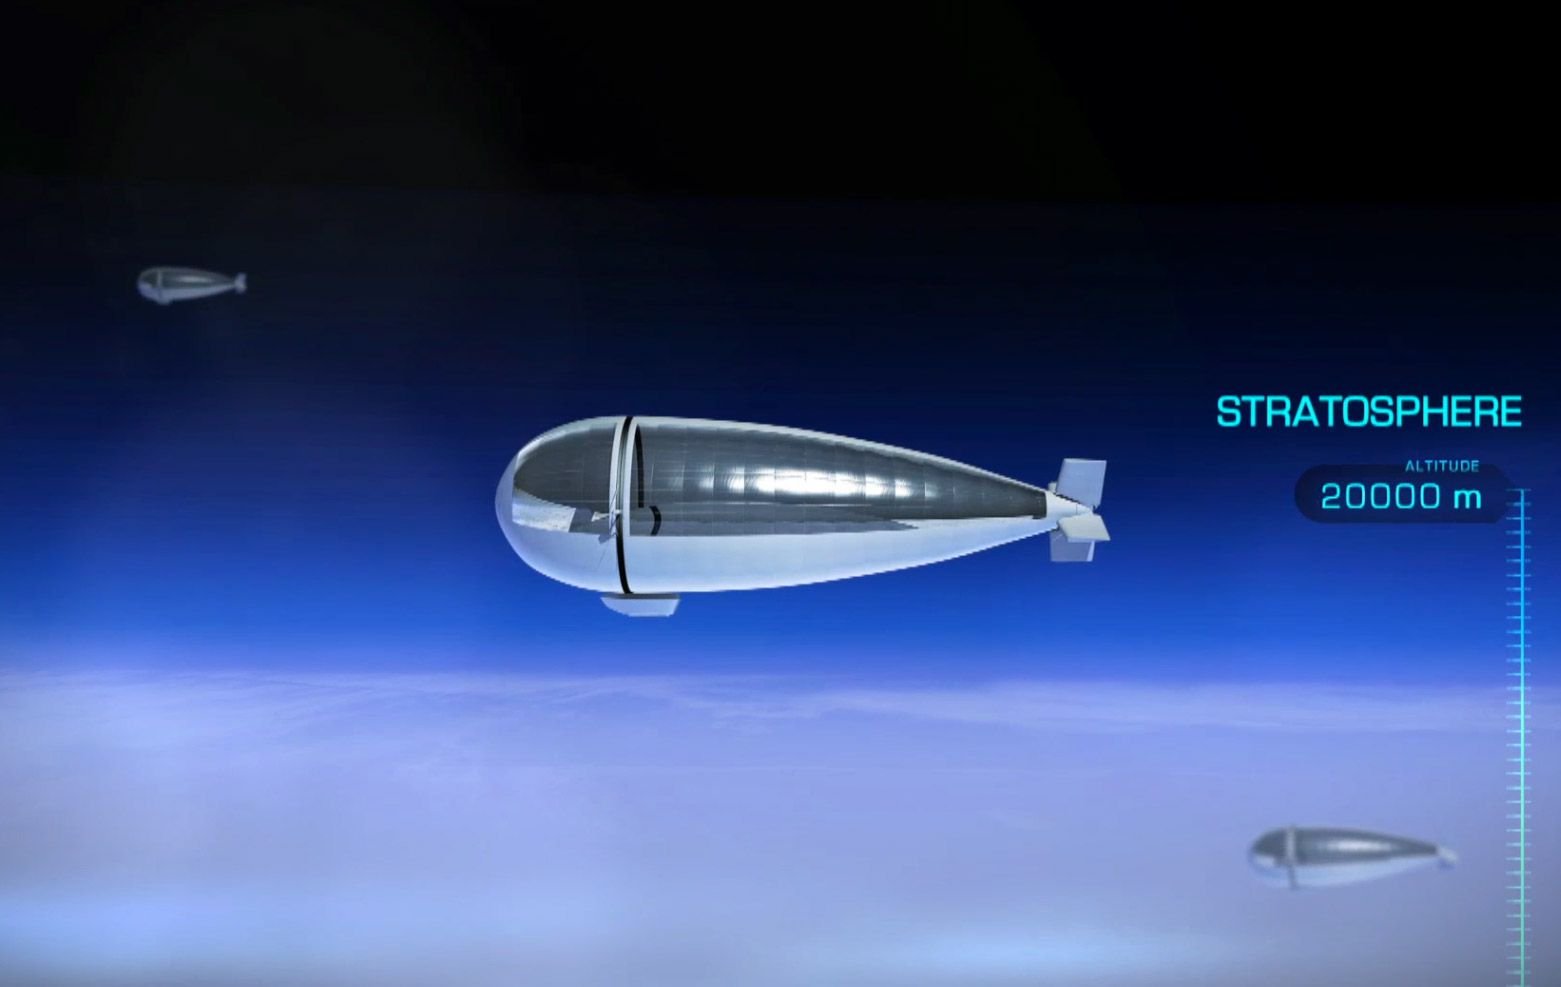 Konzept Stratobus: Das Luftschiff soll rund um die Uhr in 20 Kilometern Höhe an einem festen Punkt über der Erde schweben. Es kann Vorgänge auf der Erde beobachten und die mobilen Internetverbindungen auf der Erde verbessern.